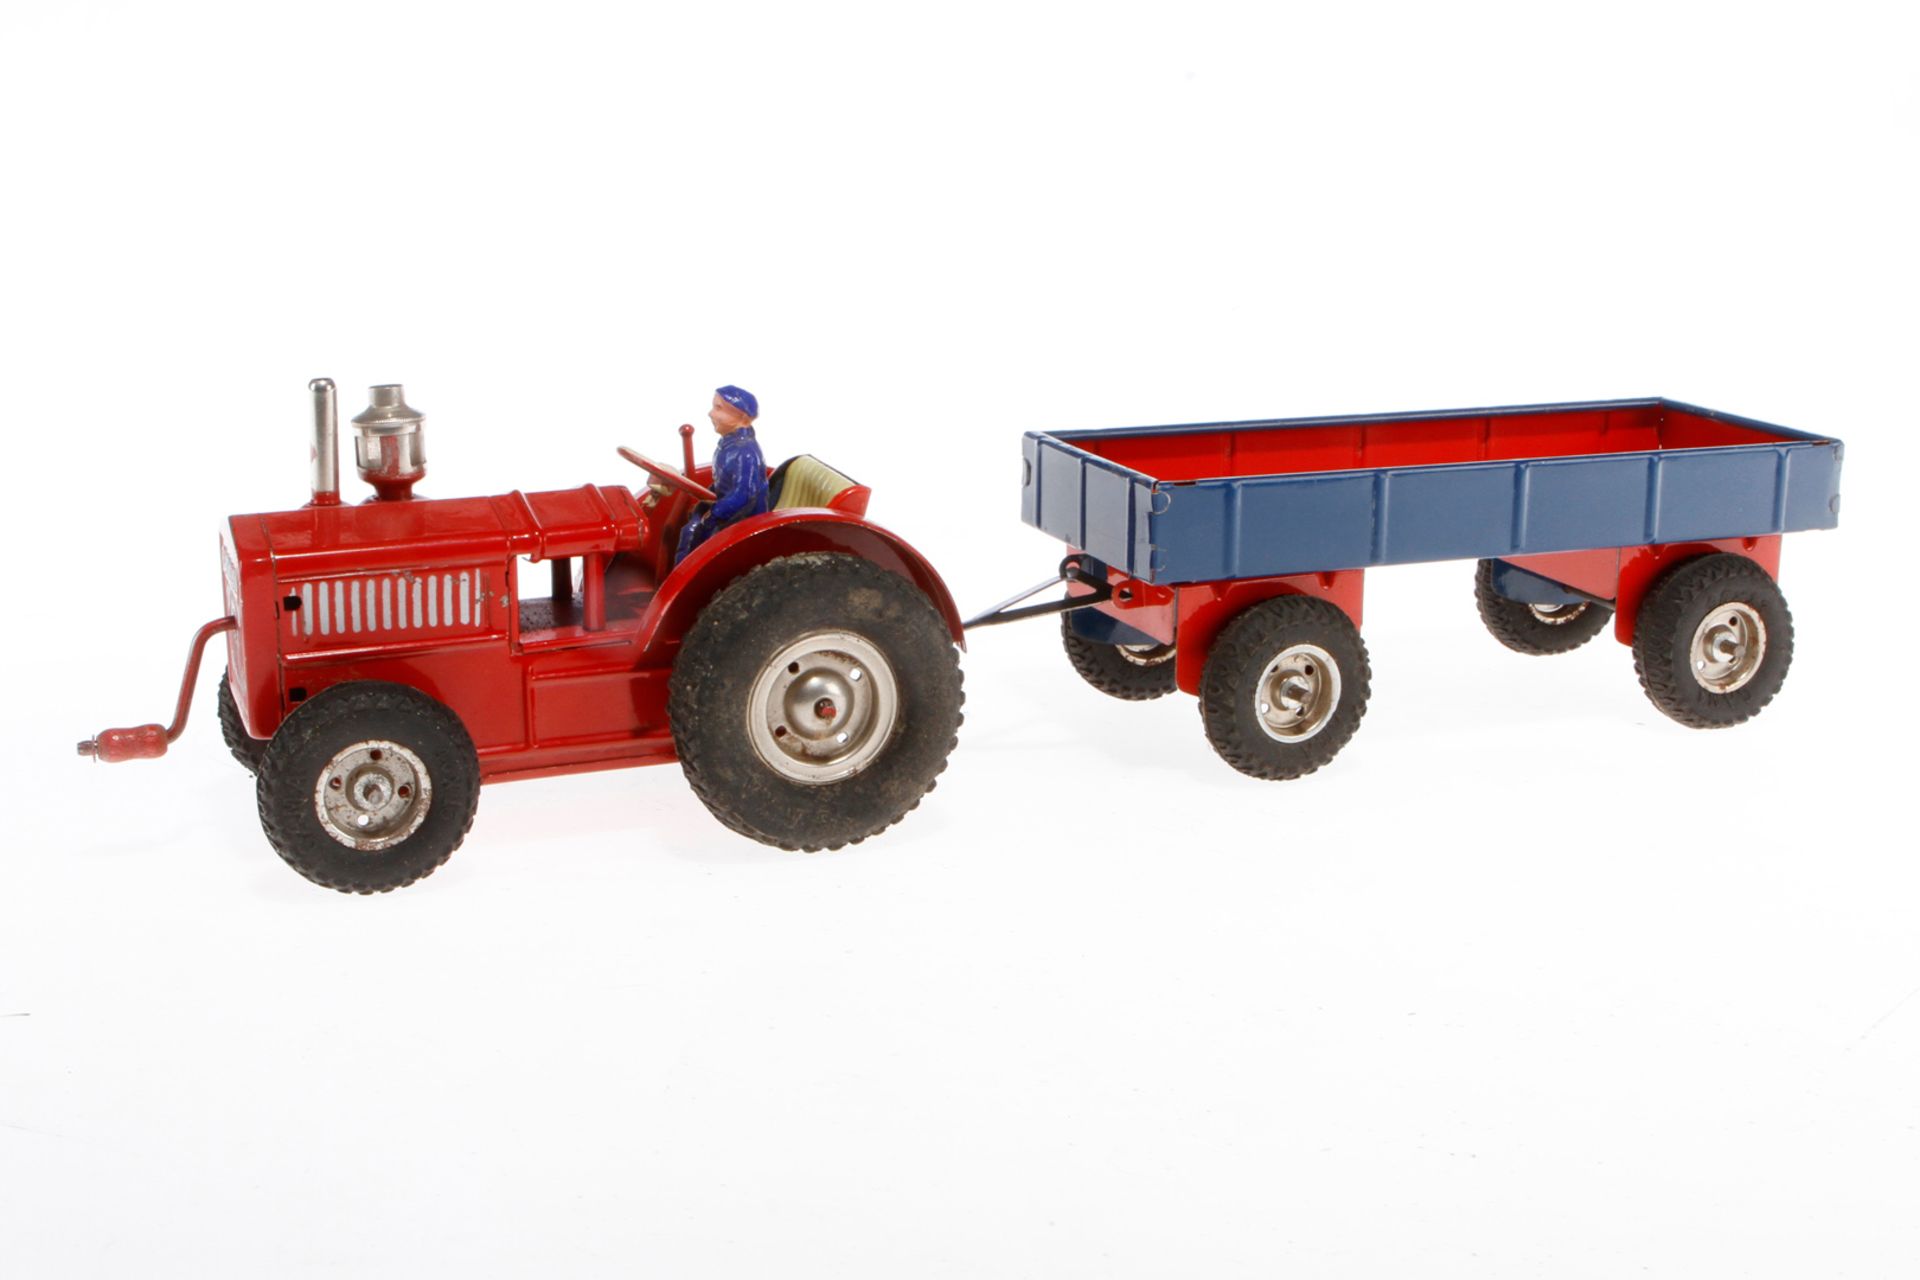 Gama Traktor mit Anhänger, HL, Uhrwerk intakt, LS und Alterungsspuren, Gesamtlänge 42, Z 3